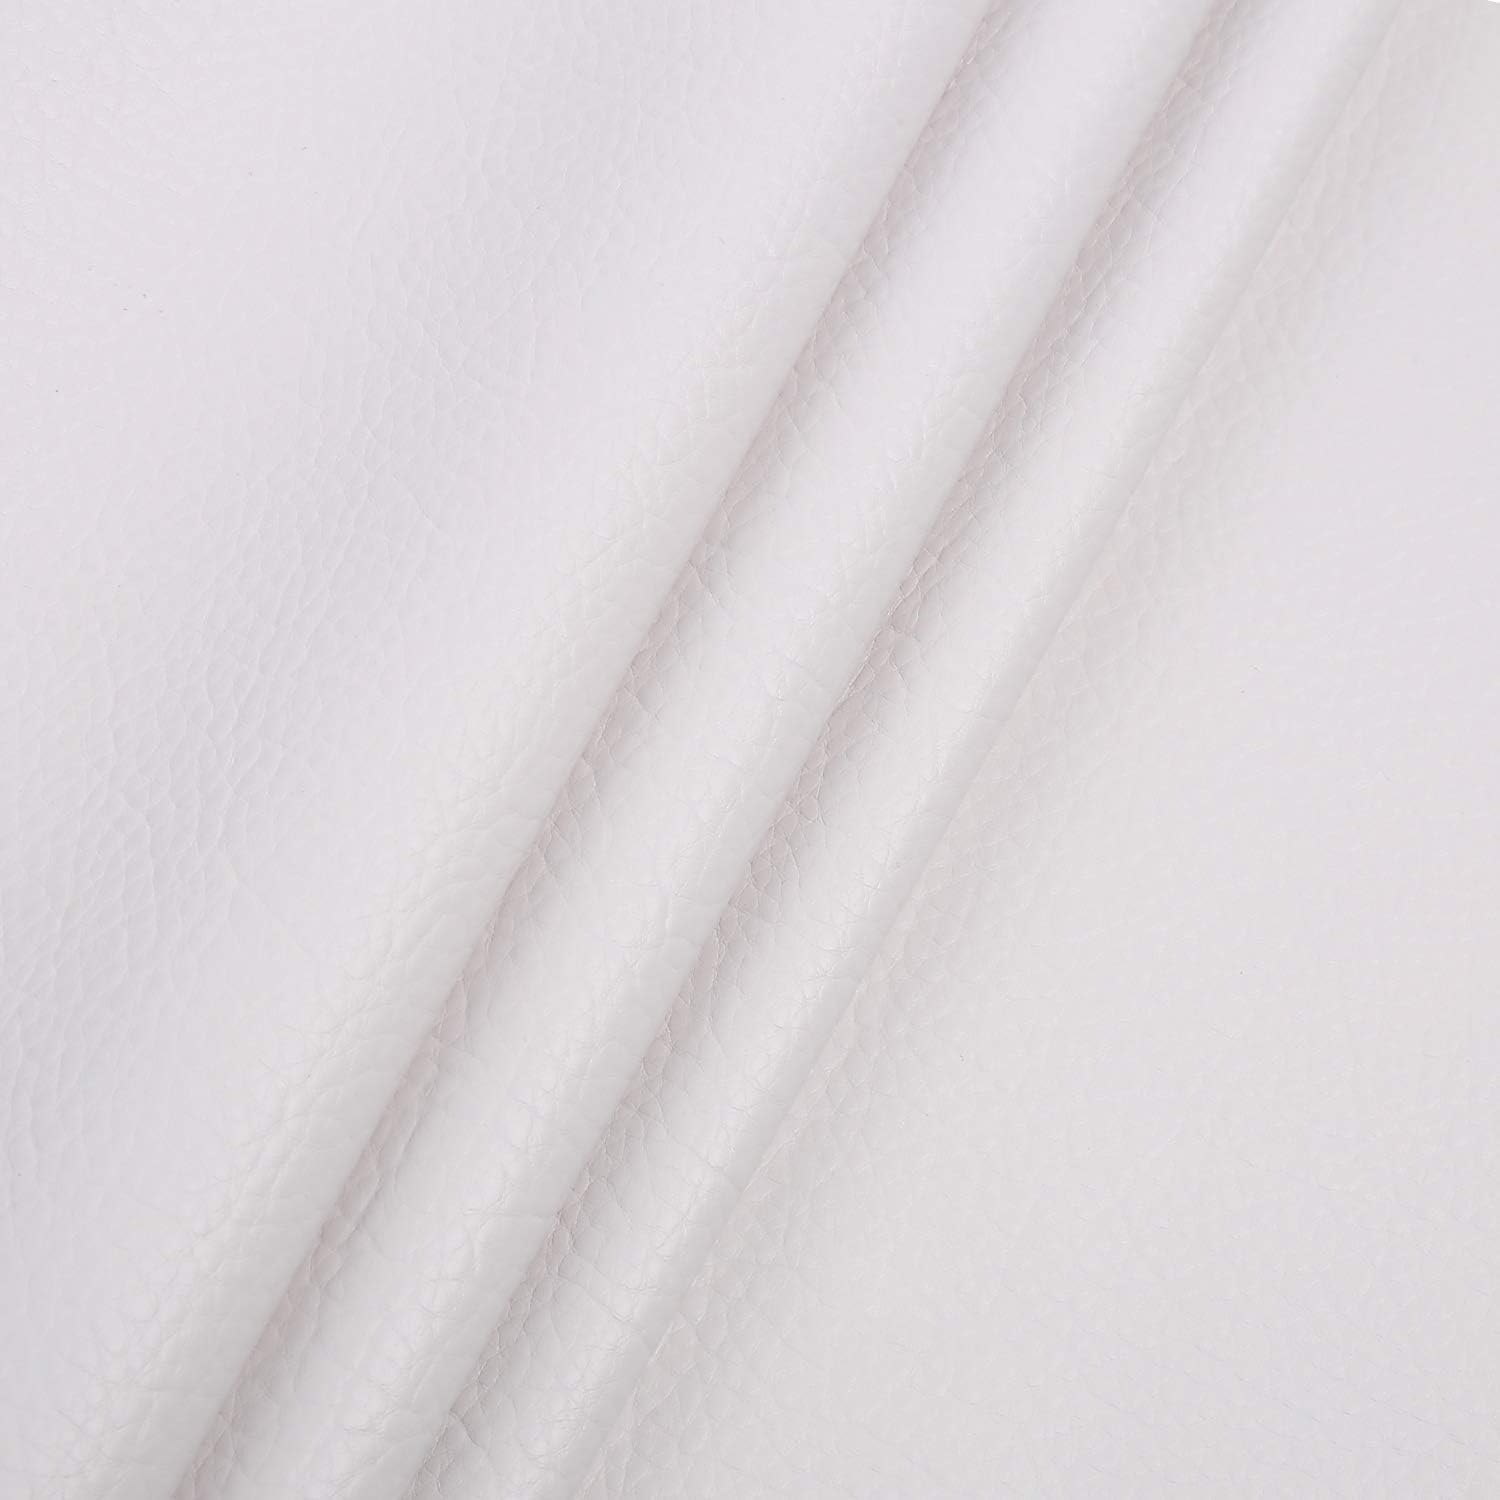 LOKIPA 合皮 生地 ソフト 人工レザー DIY かばんの作りに 手芸材料 pvc leather ライチ紋 幅135cm (2M, 白いA)